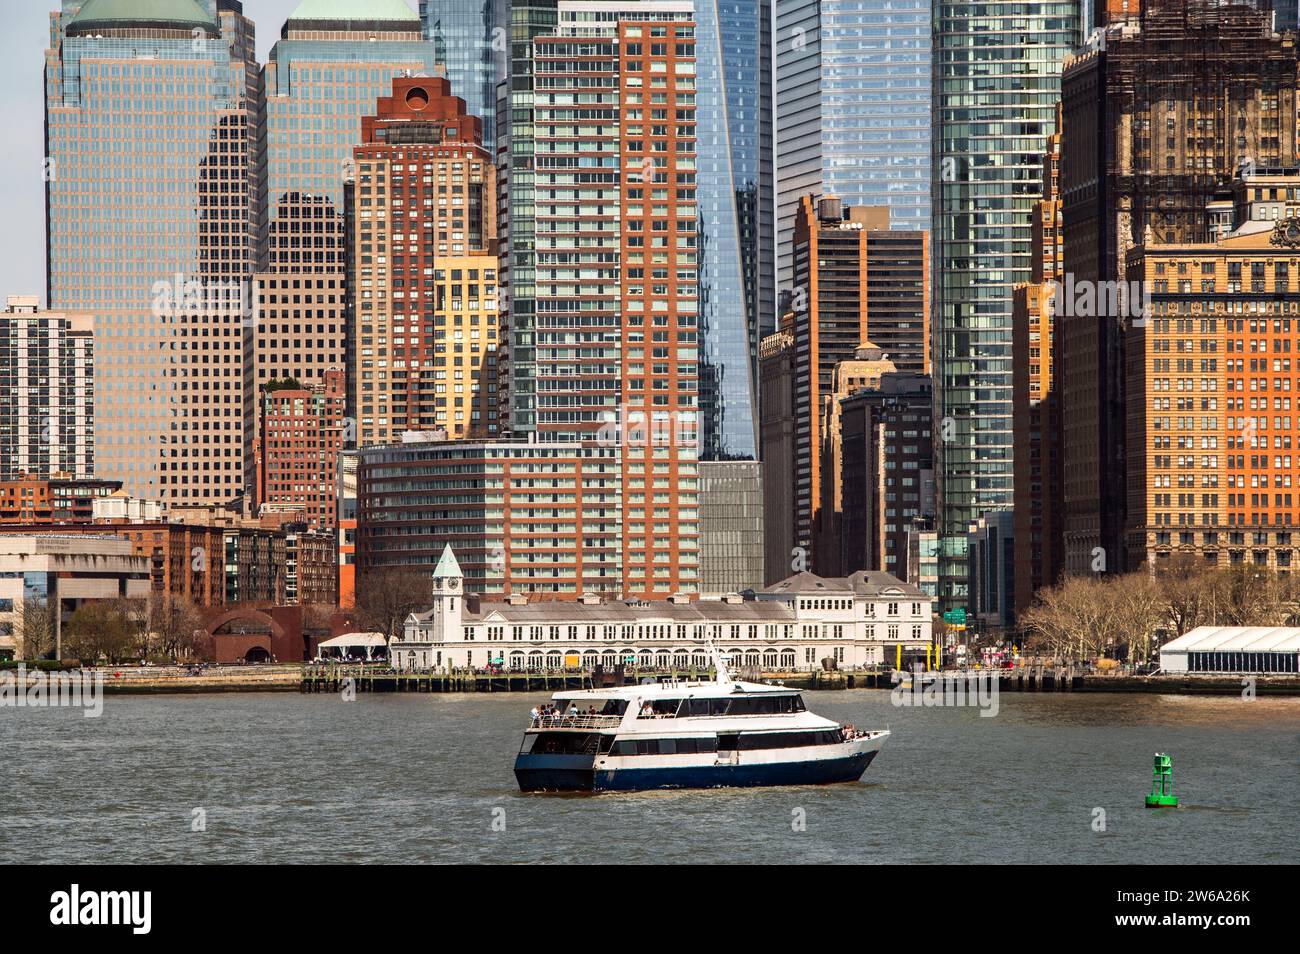 Eine Nahaufnahme der architektonischen Vielfalt Manhattans mit einer Mischung aus alten Backsteinstrukturen und modernen Glashochhäusern. In der Hu wird eine Fähre gesehen Stockfoto